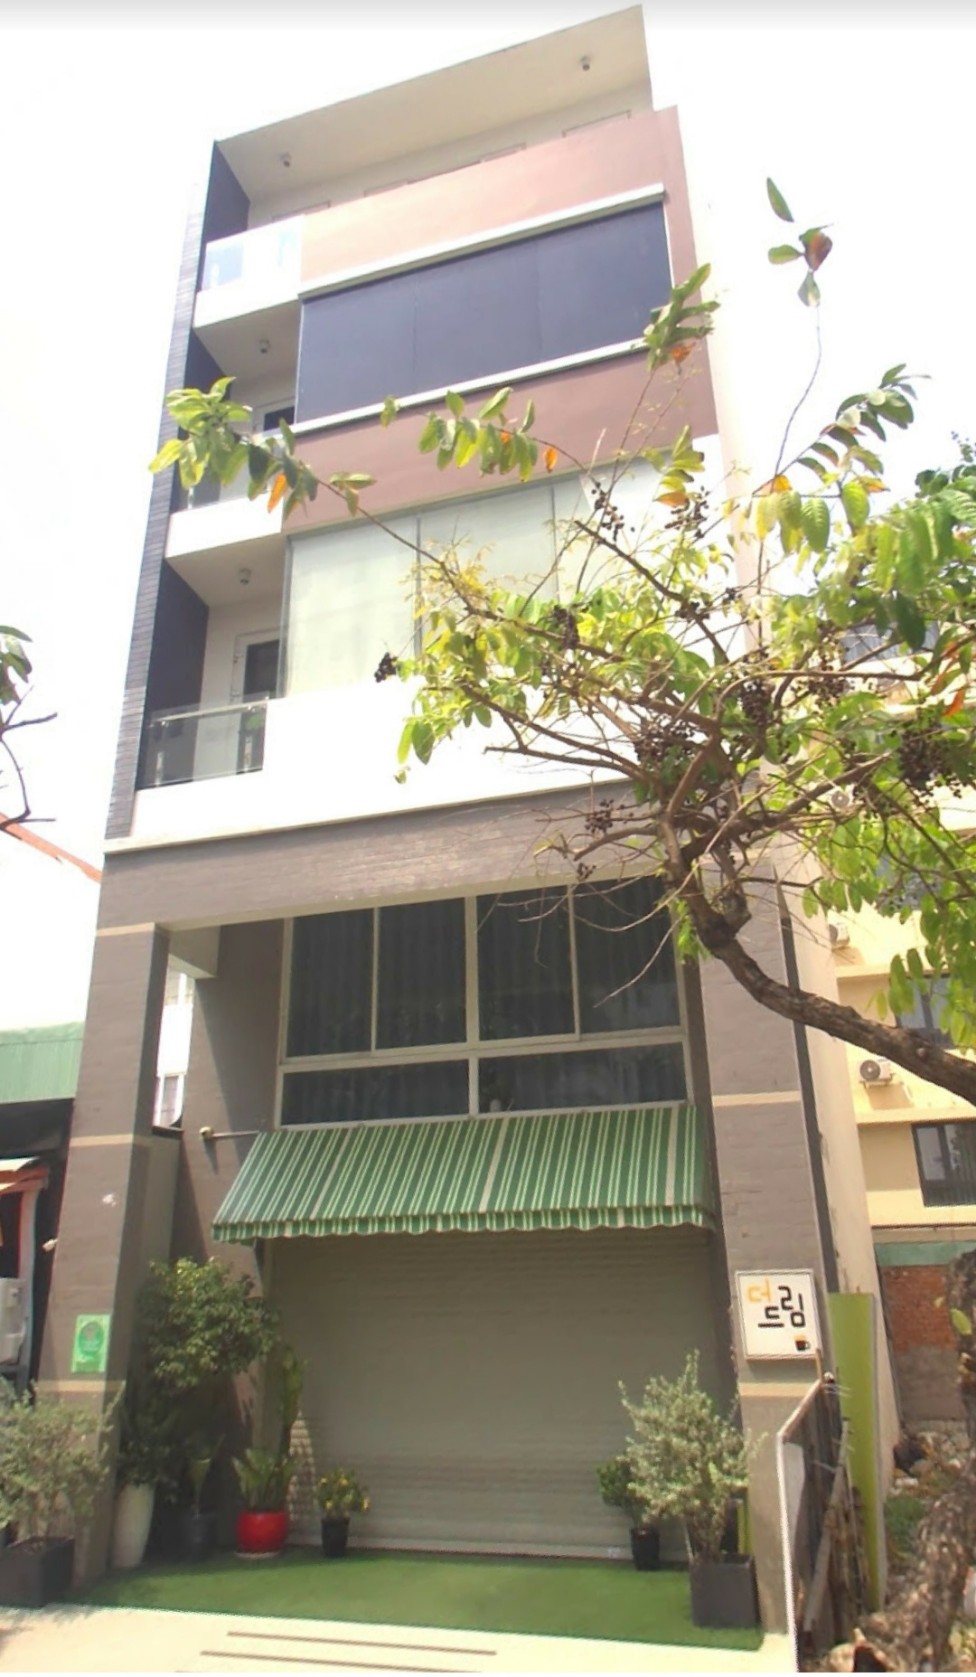 Cho thuê nhà phố Phú Mỹ Hưng Q7 thang máy, làm Spa, quán ăn, công ty.